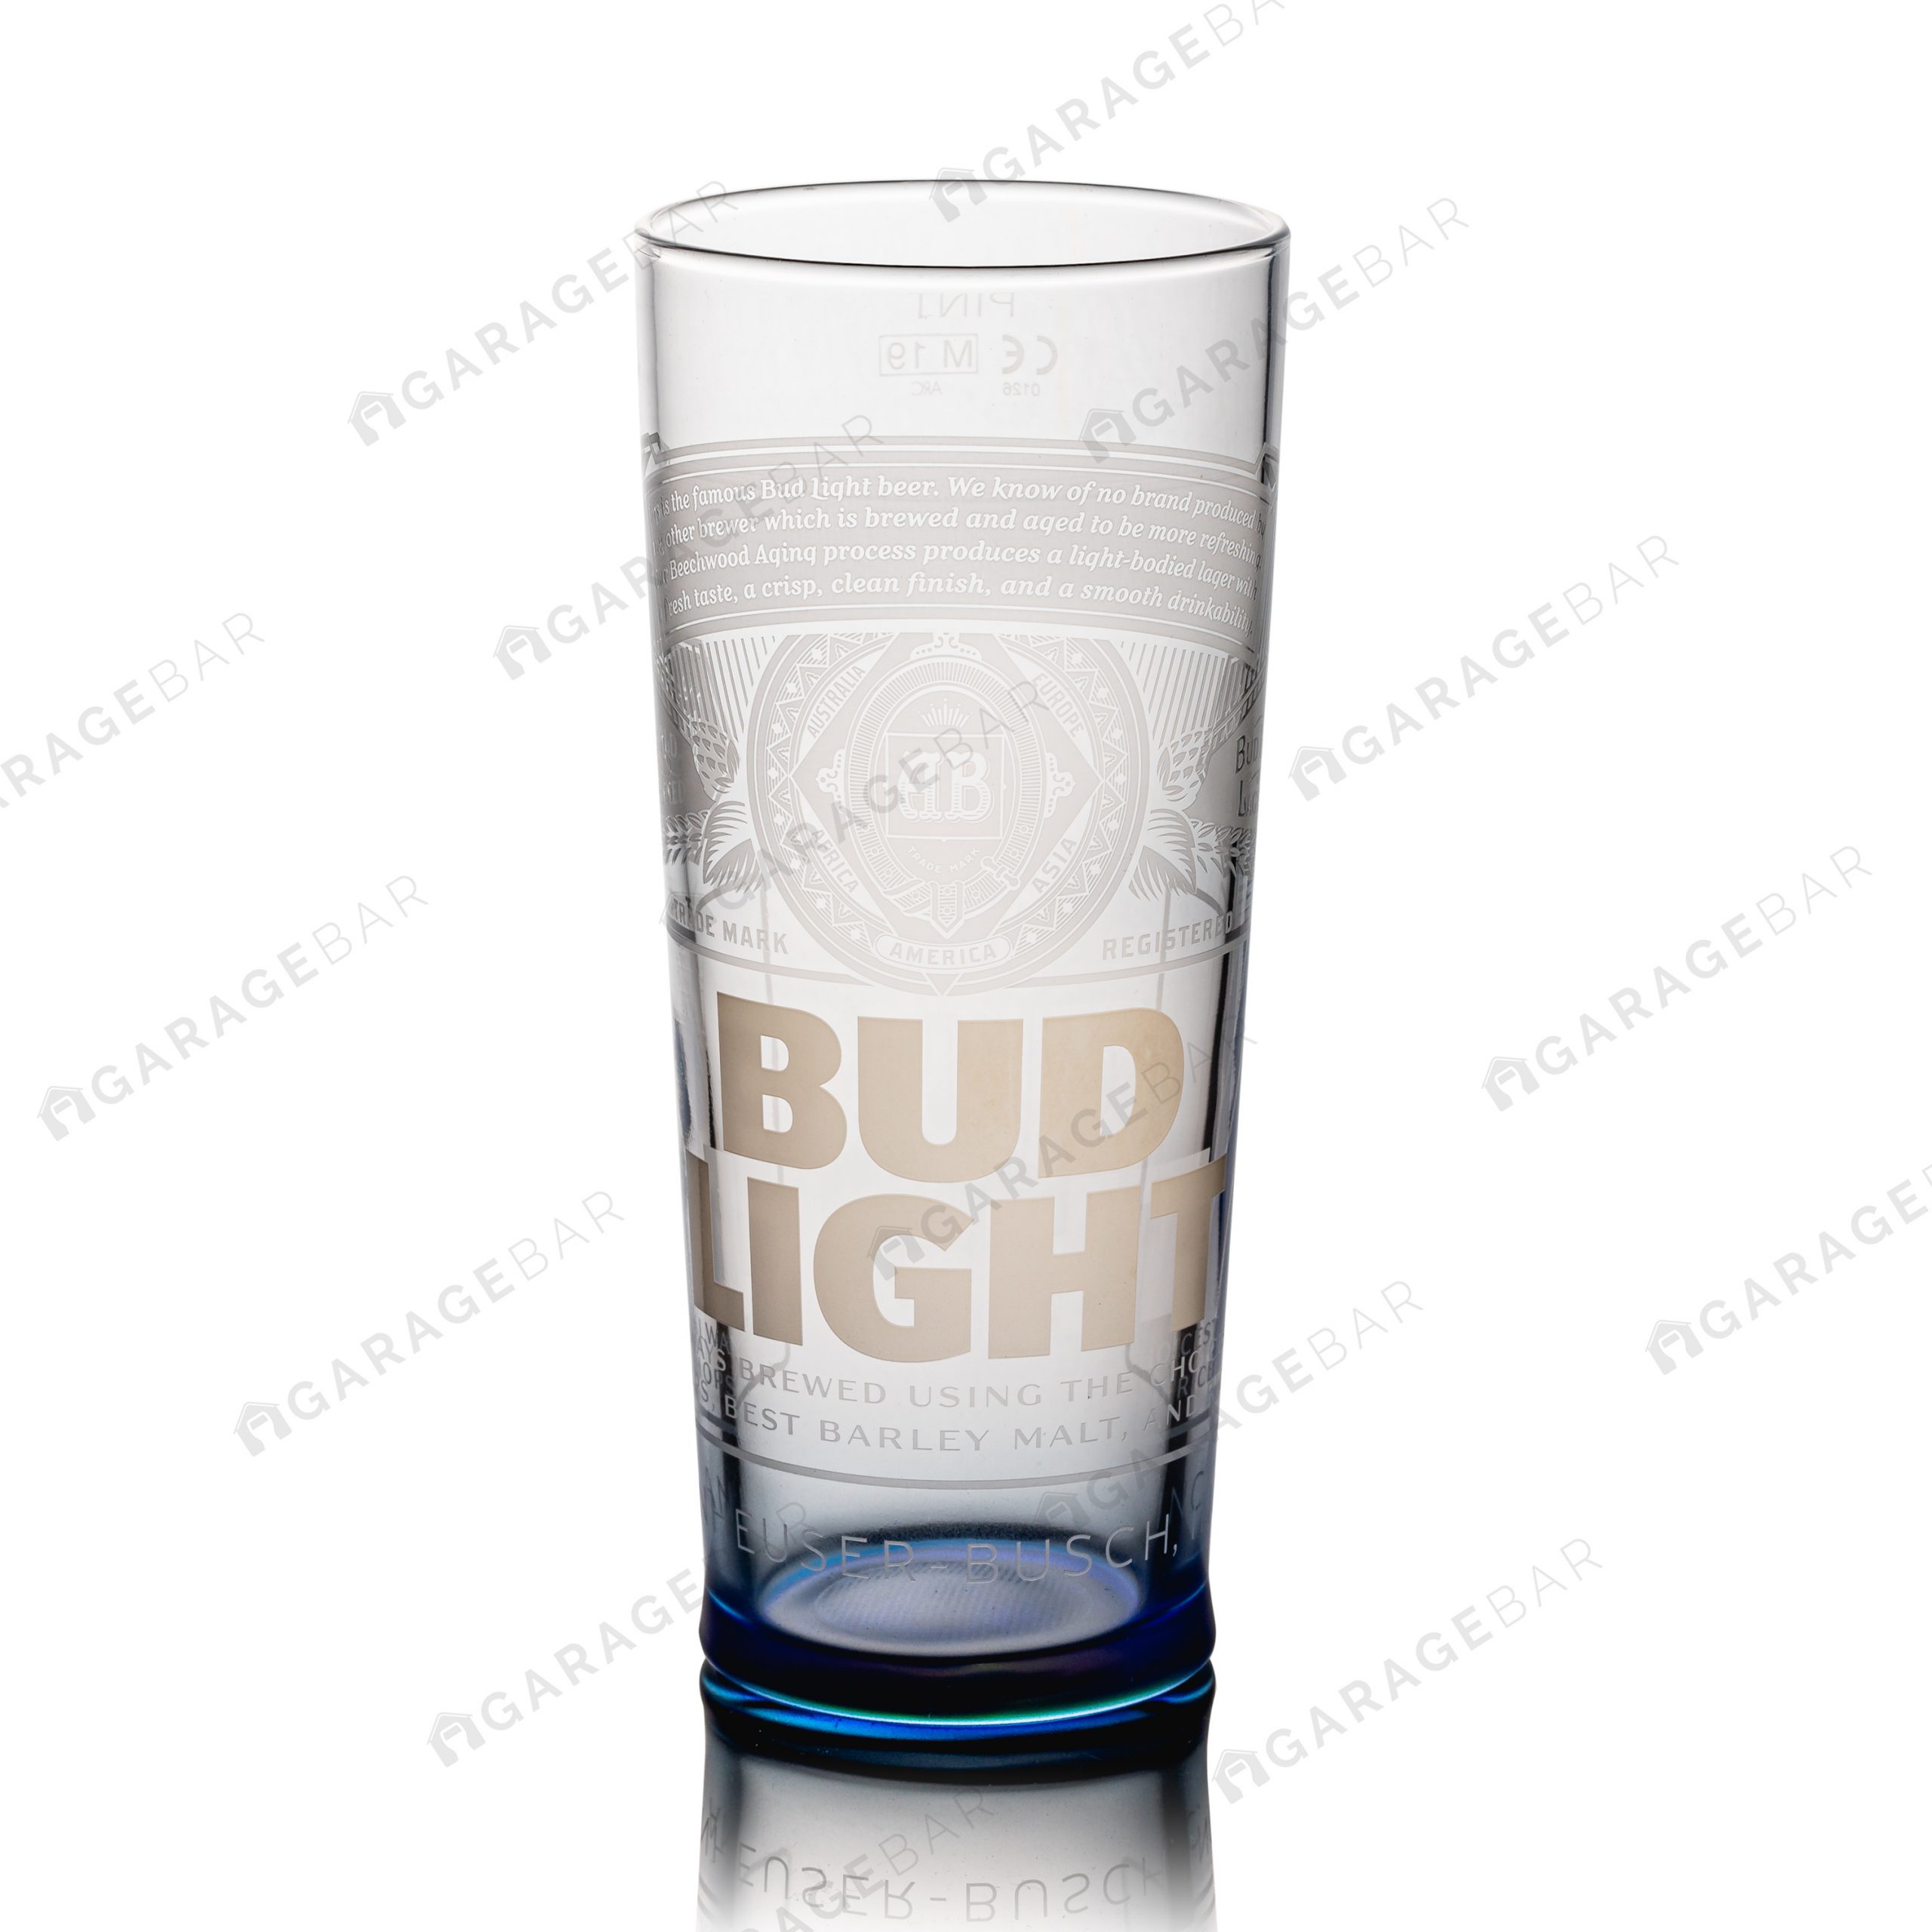 bud light beer glasses